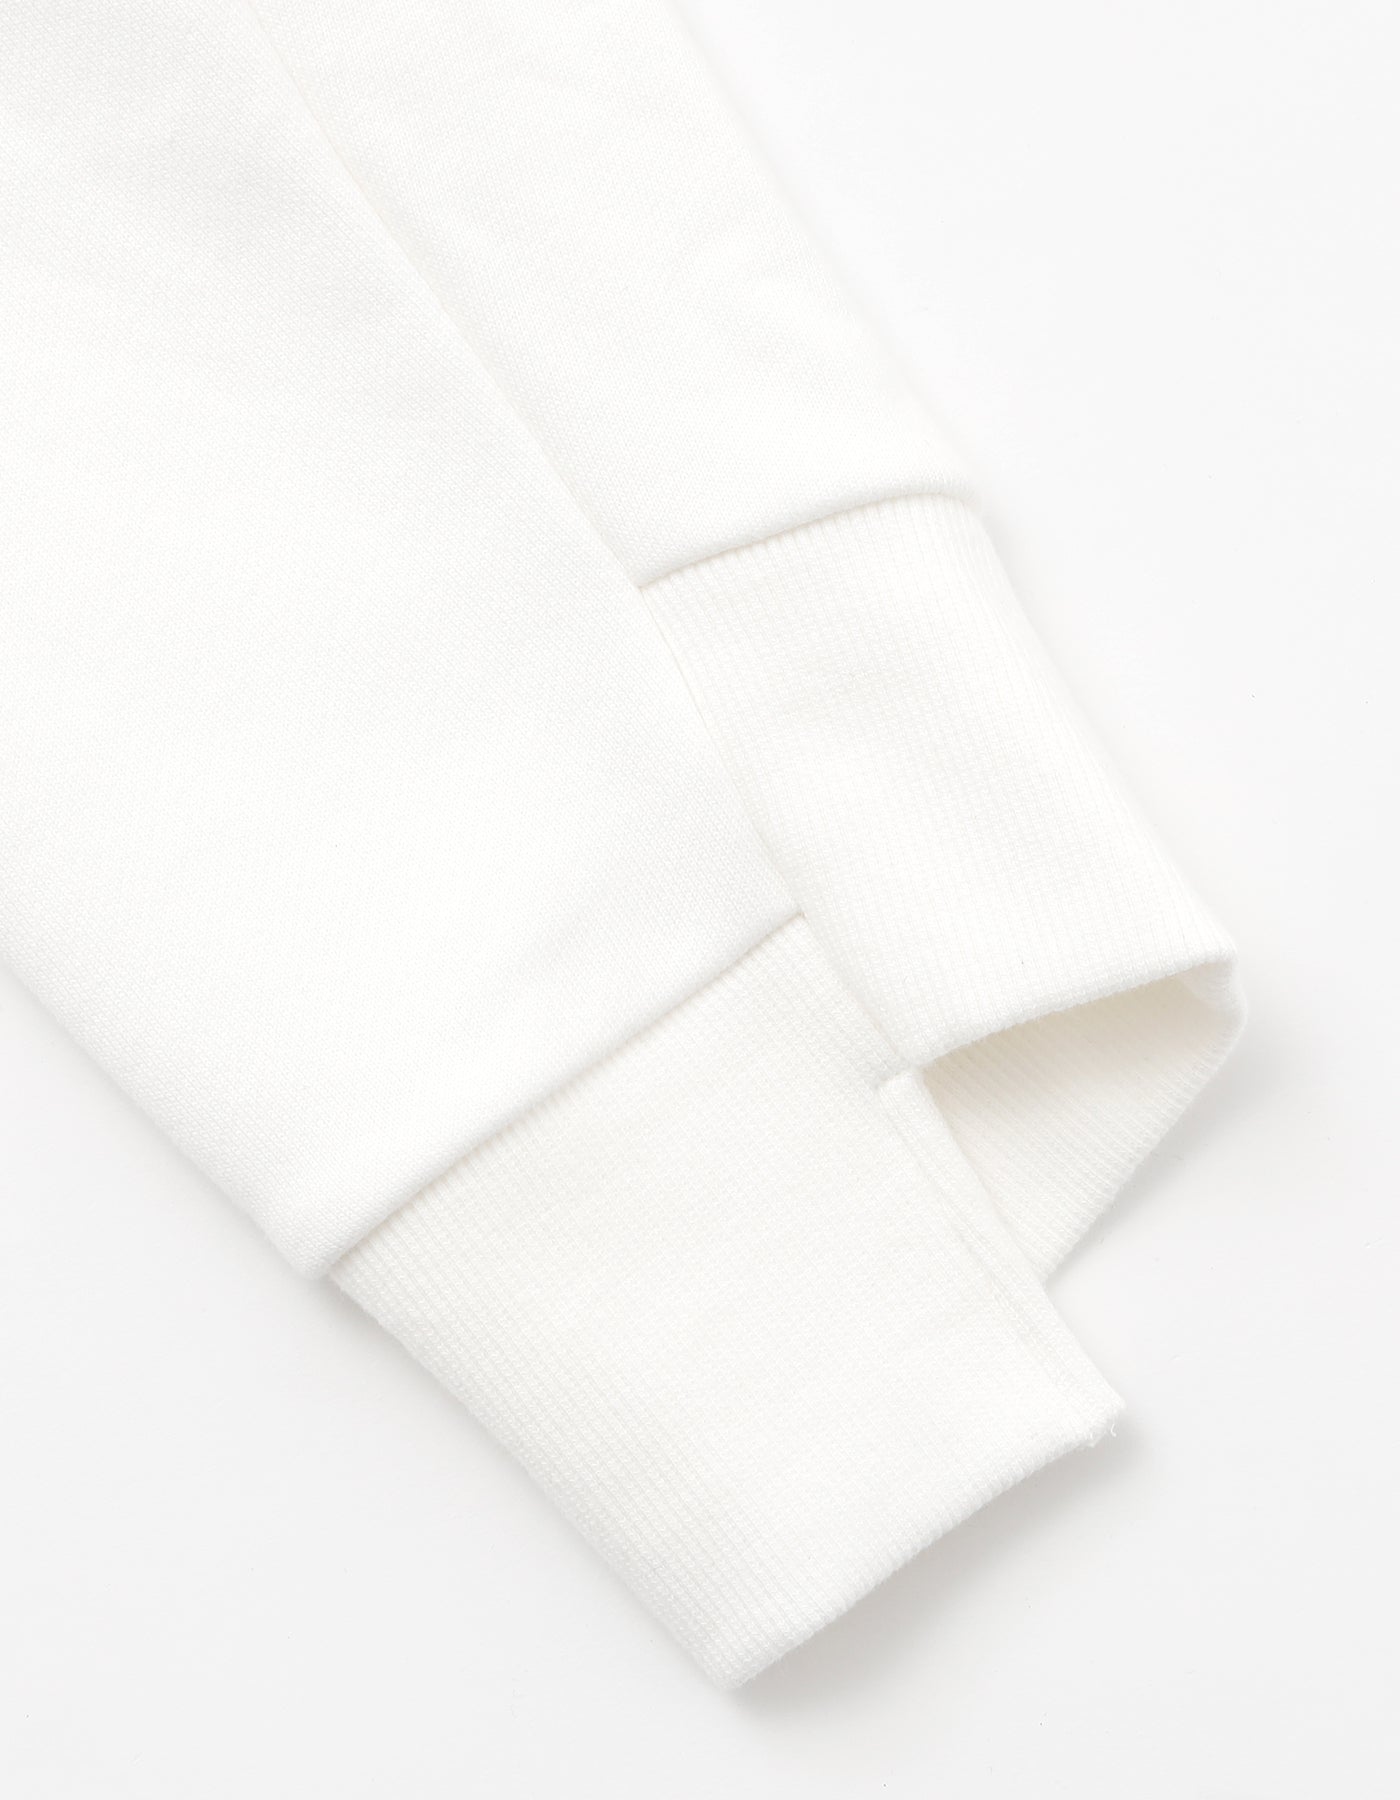 Kewi hoodie / WHITE